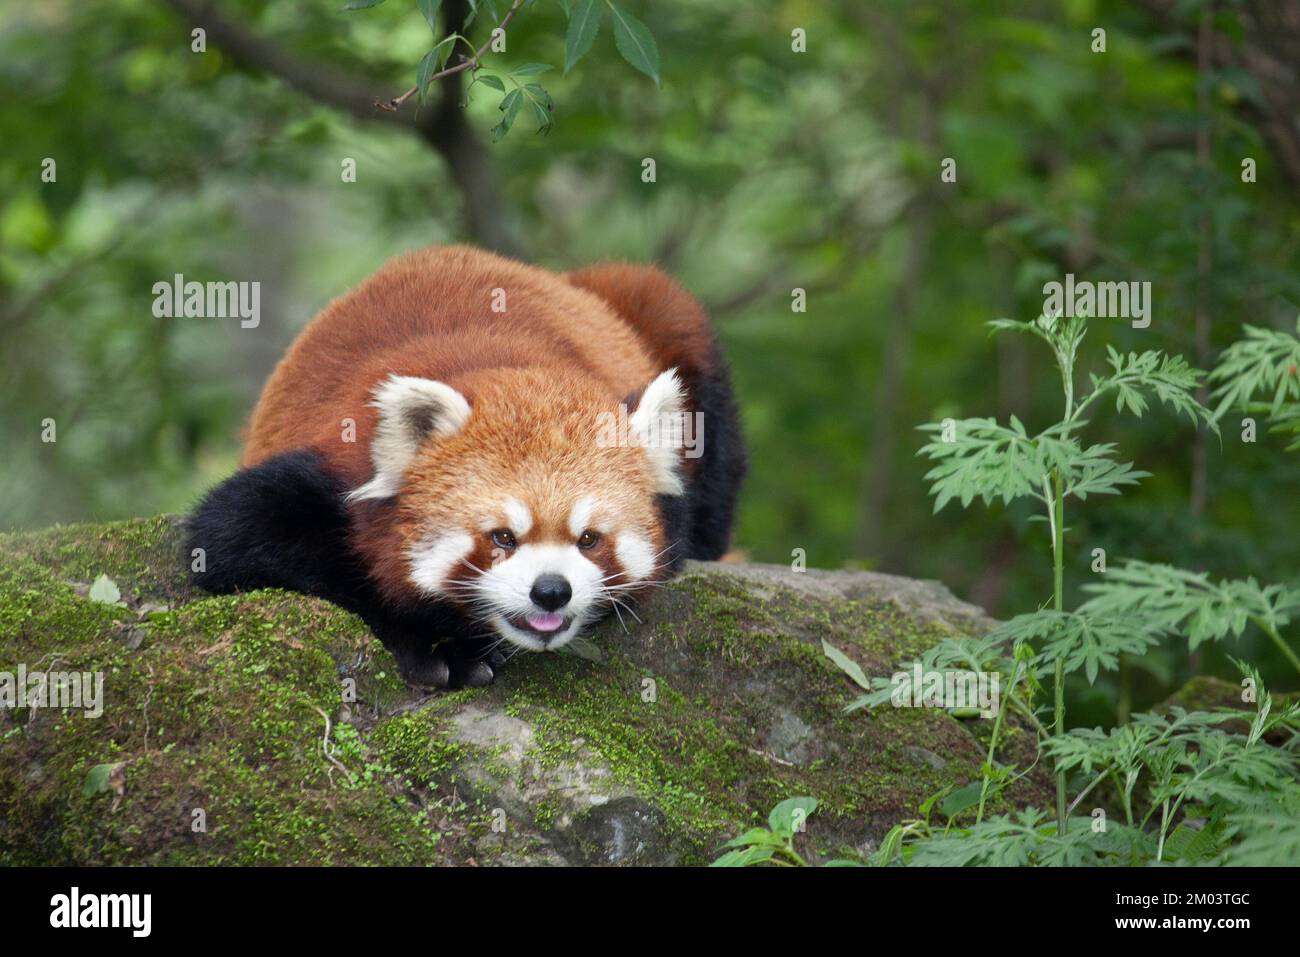 Panda rouge située sur un rocher dans la forêt montagnarde de la Réserve naturelle de Wolong, en Chine. Ailurus fulgens. Banque D'Images